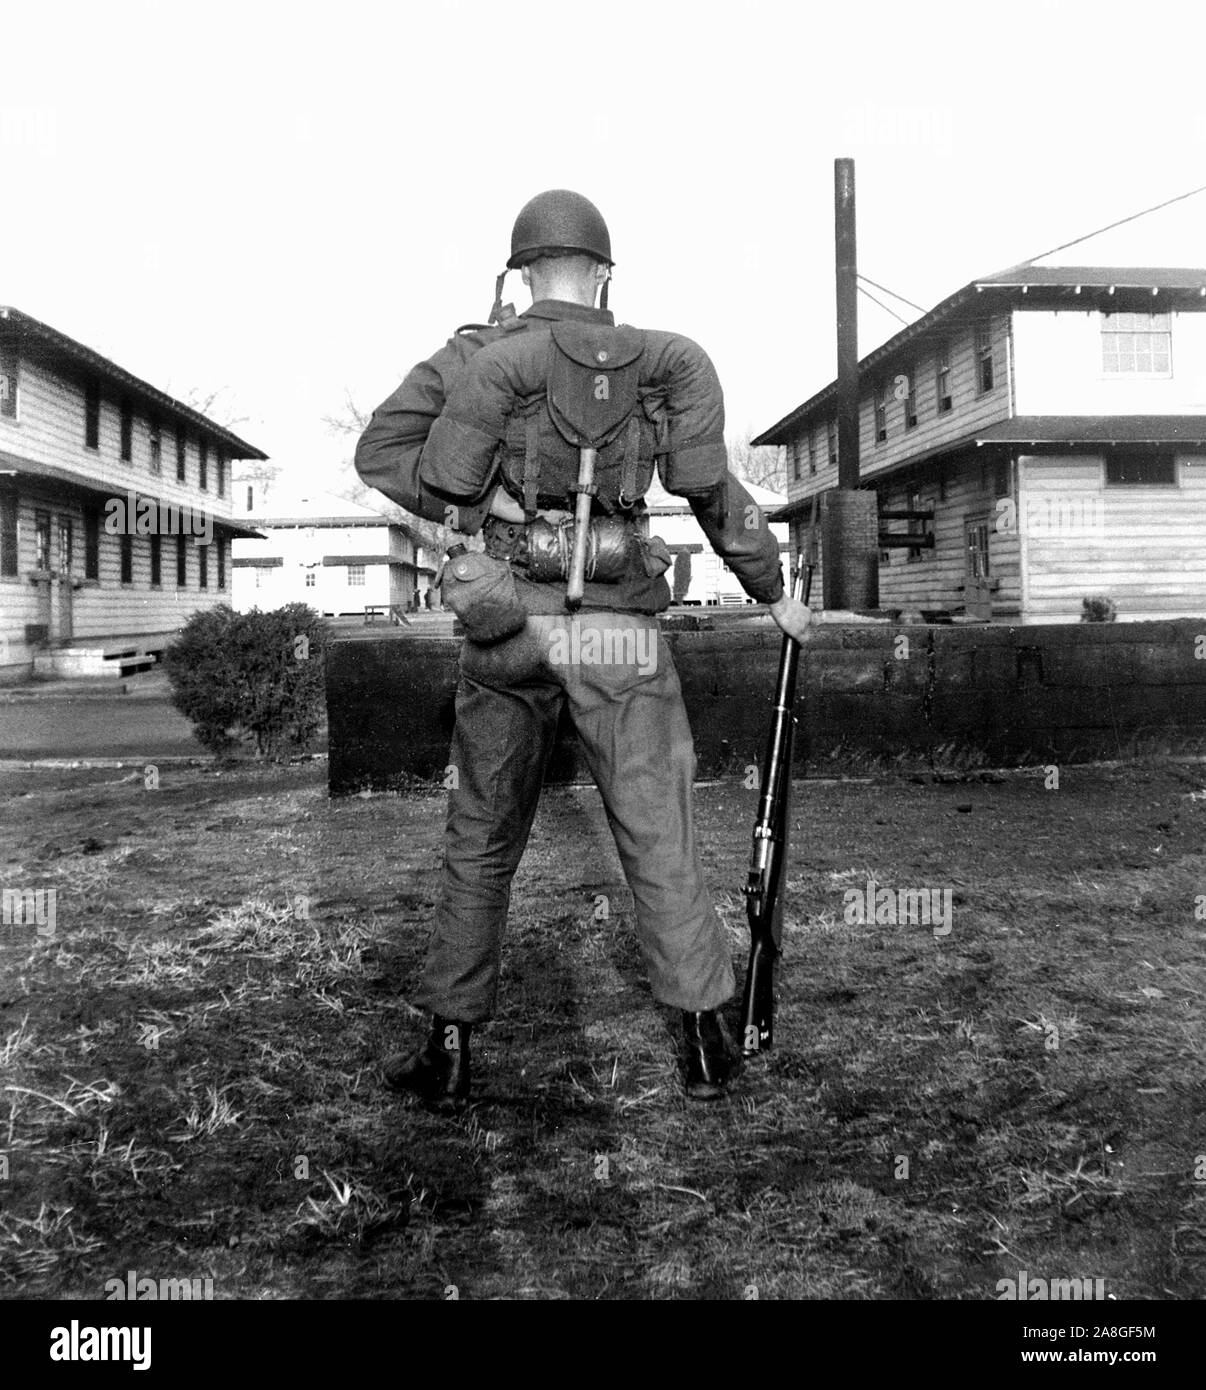 Un soldat américain dans une vue arrière posent à la formation de base camp pendant la Seconde Guerre mondiale, ca. 1943. Banque D'Images